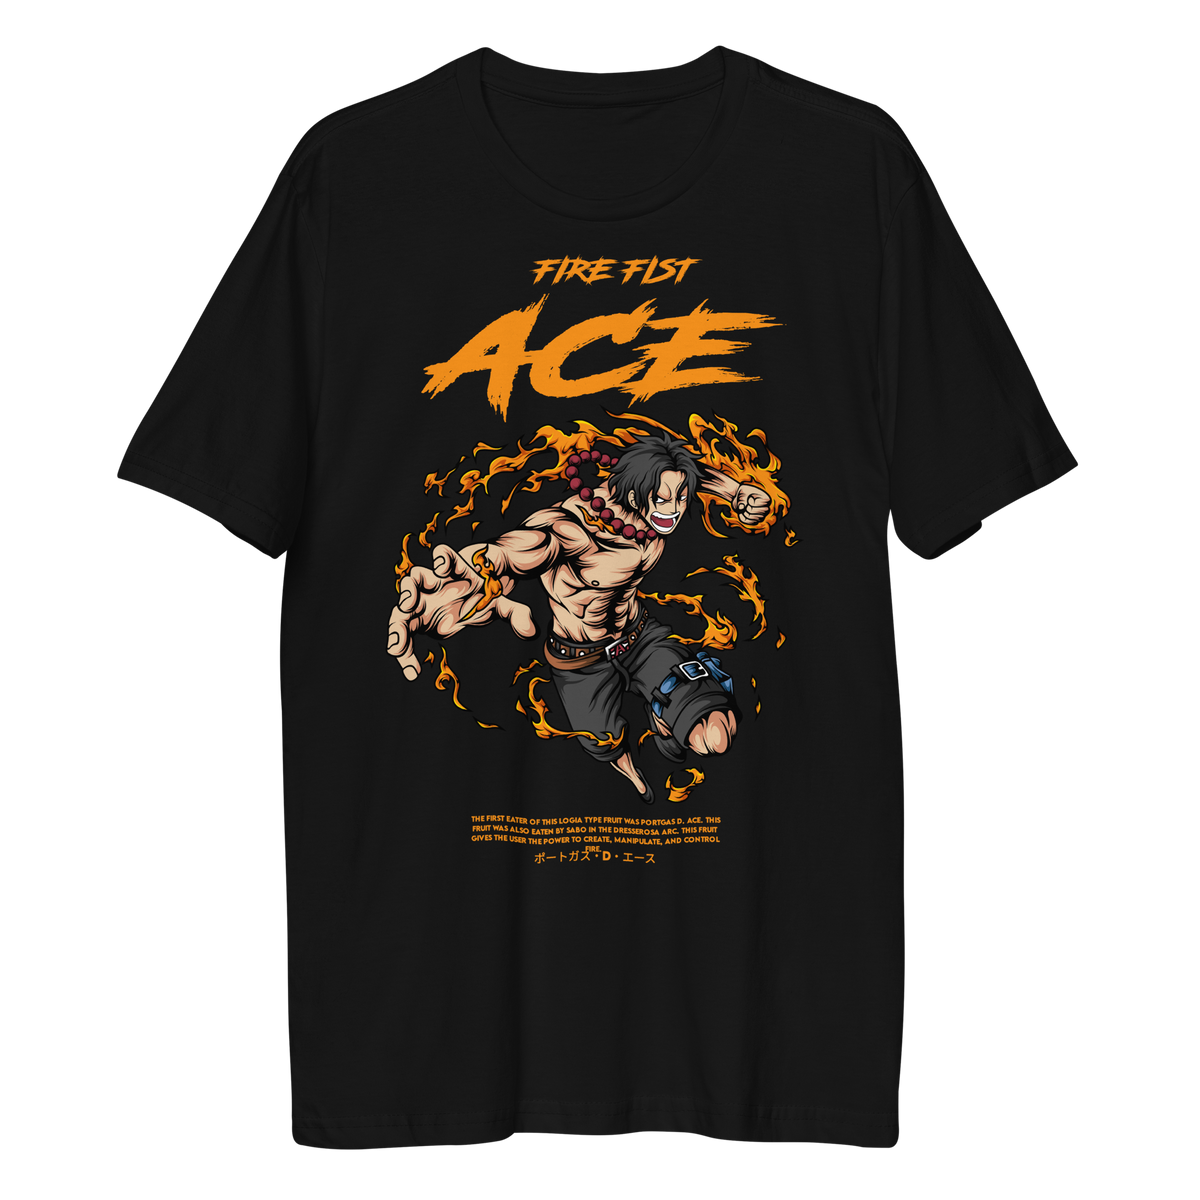 Nome do produto: Camiseta Fire Fist Ace